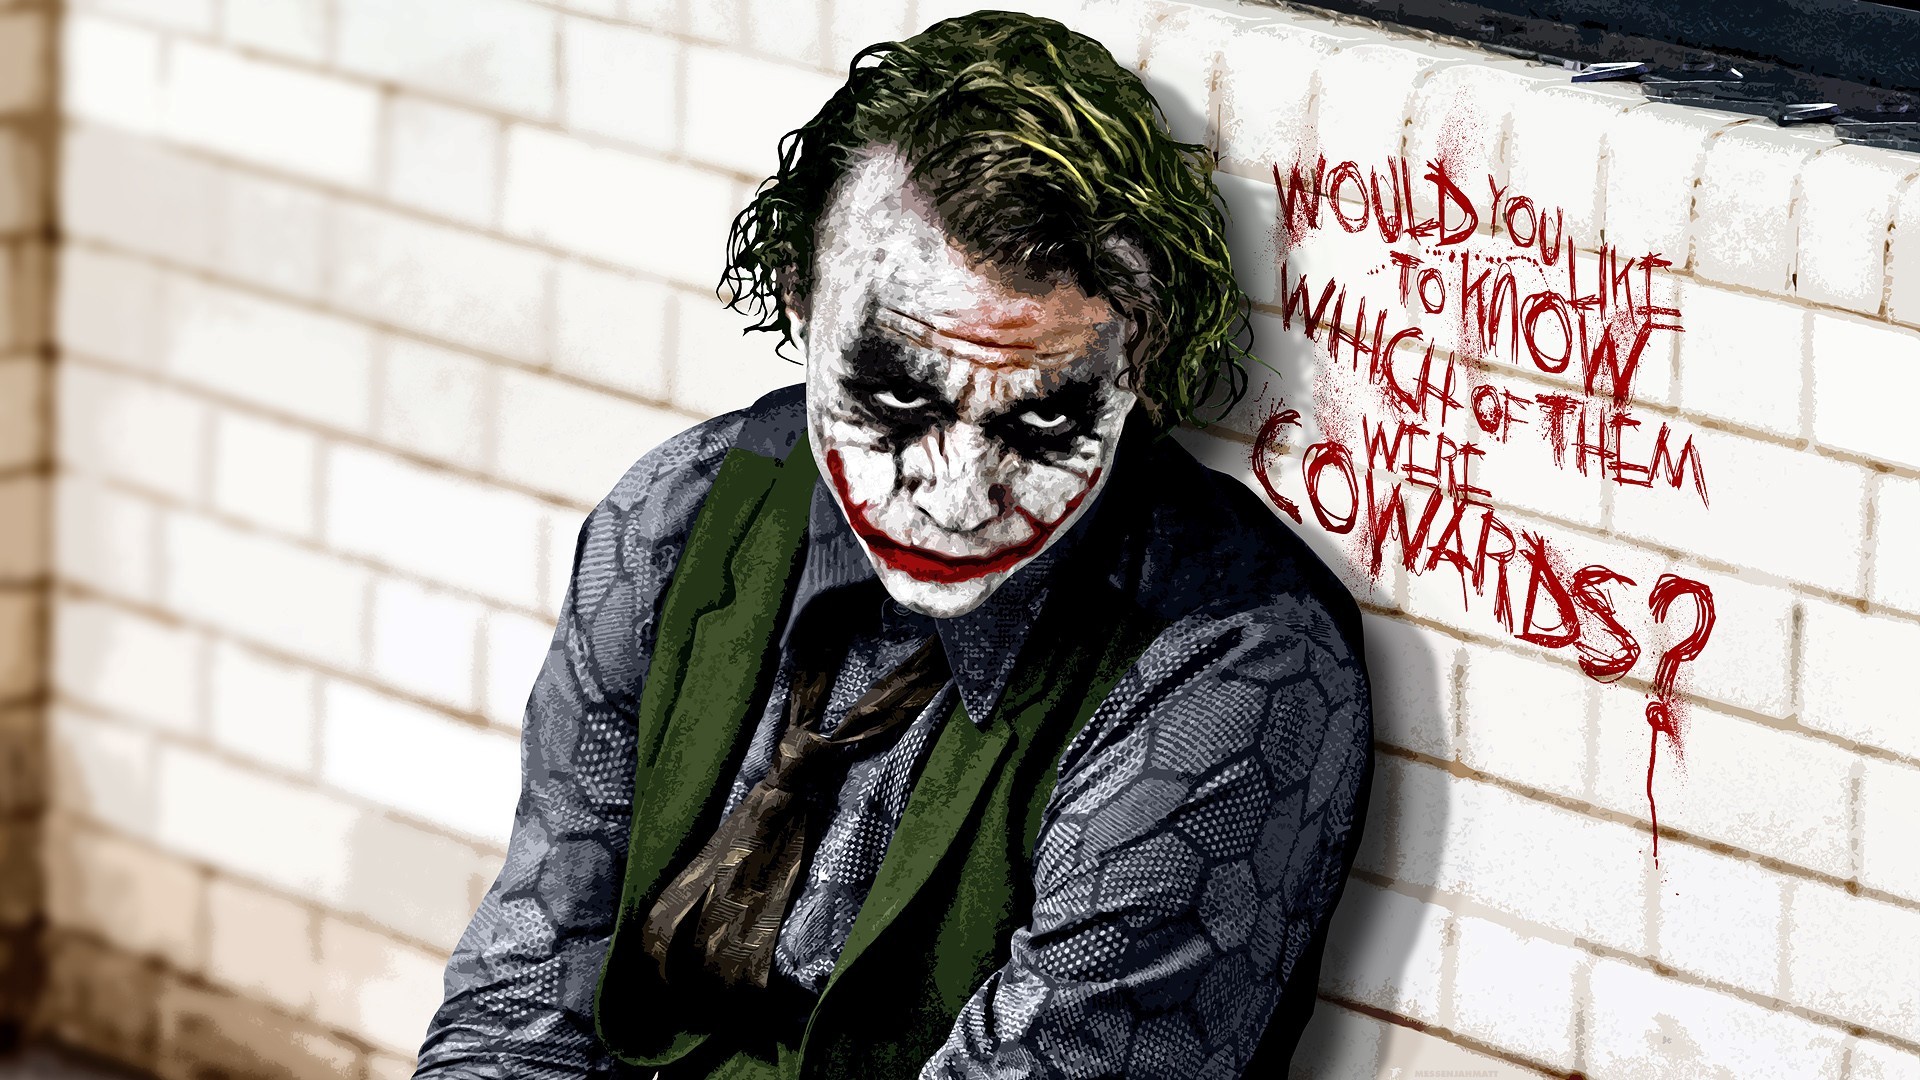 The Joker in Batman Movie Wallpaper | HD Wallpapers